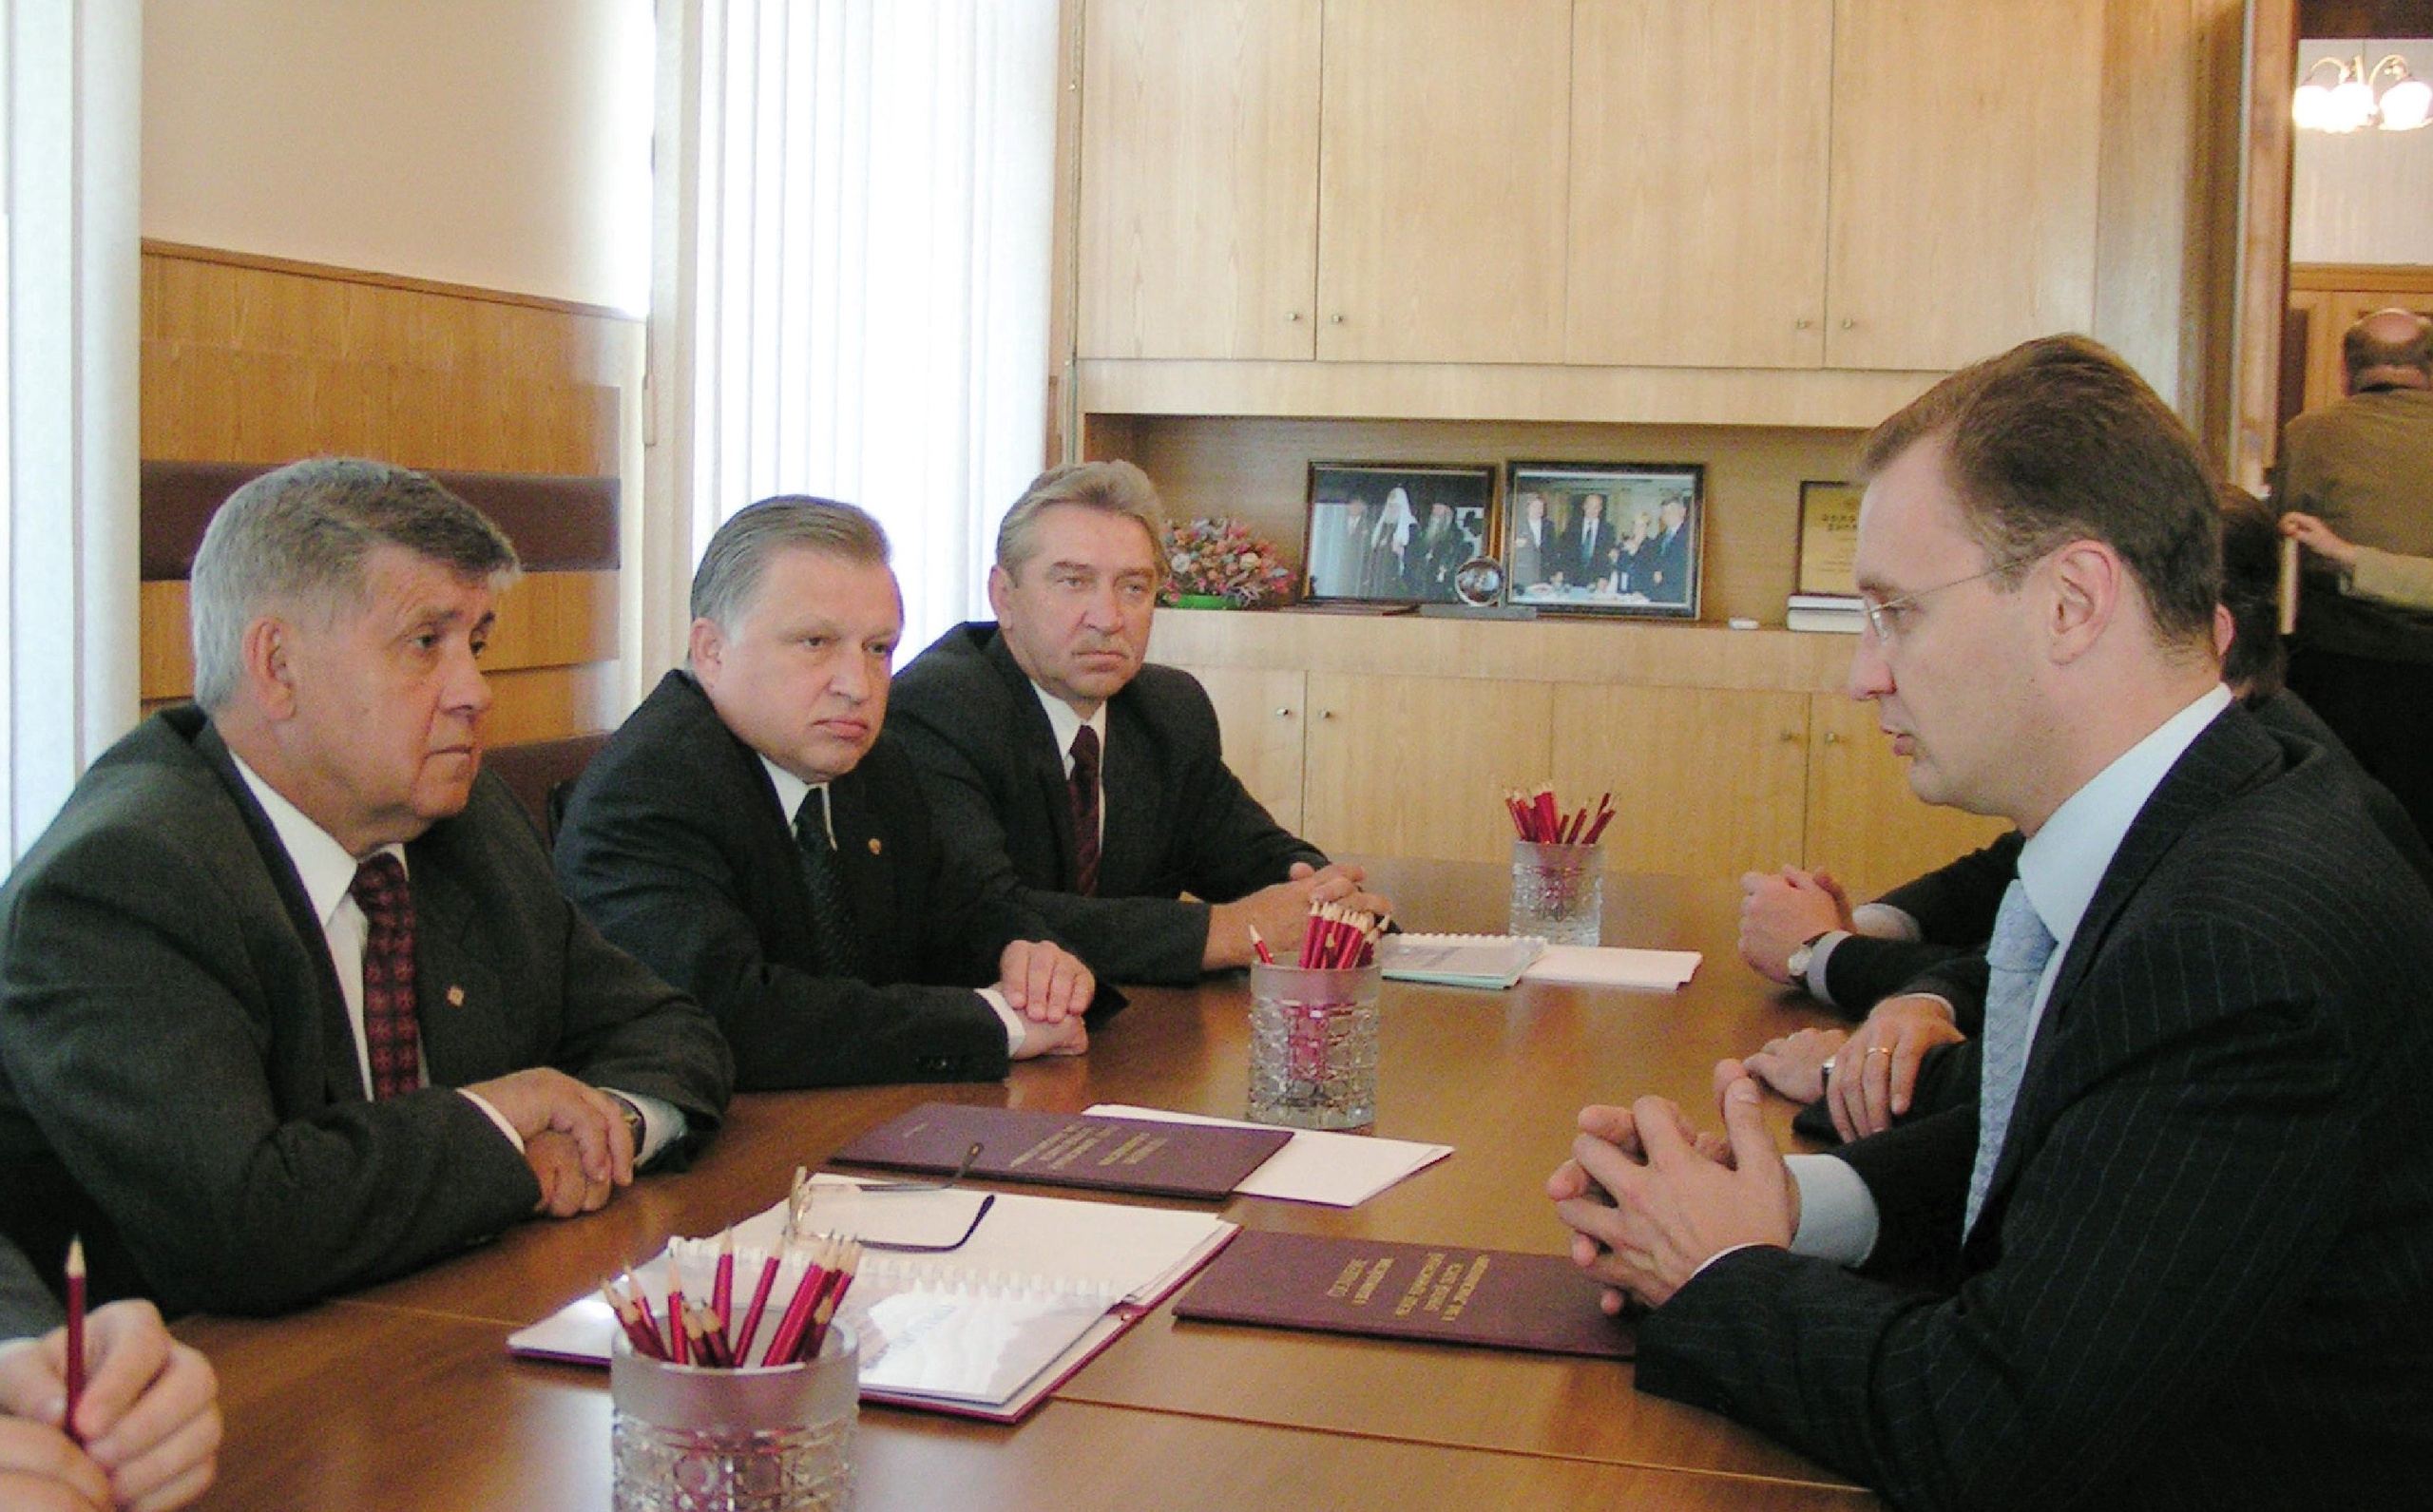 Подписание первого соглашения о взаимодействии между губернатором Брянской области Юрием Лодкиным и председателем совета директоров ТМХ Дмитрием Комиссаровым (справа). Апрель 2004 года